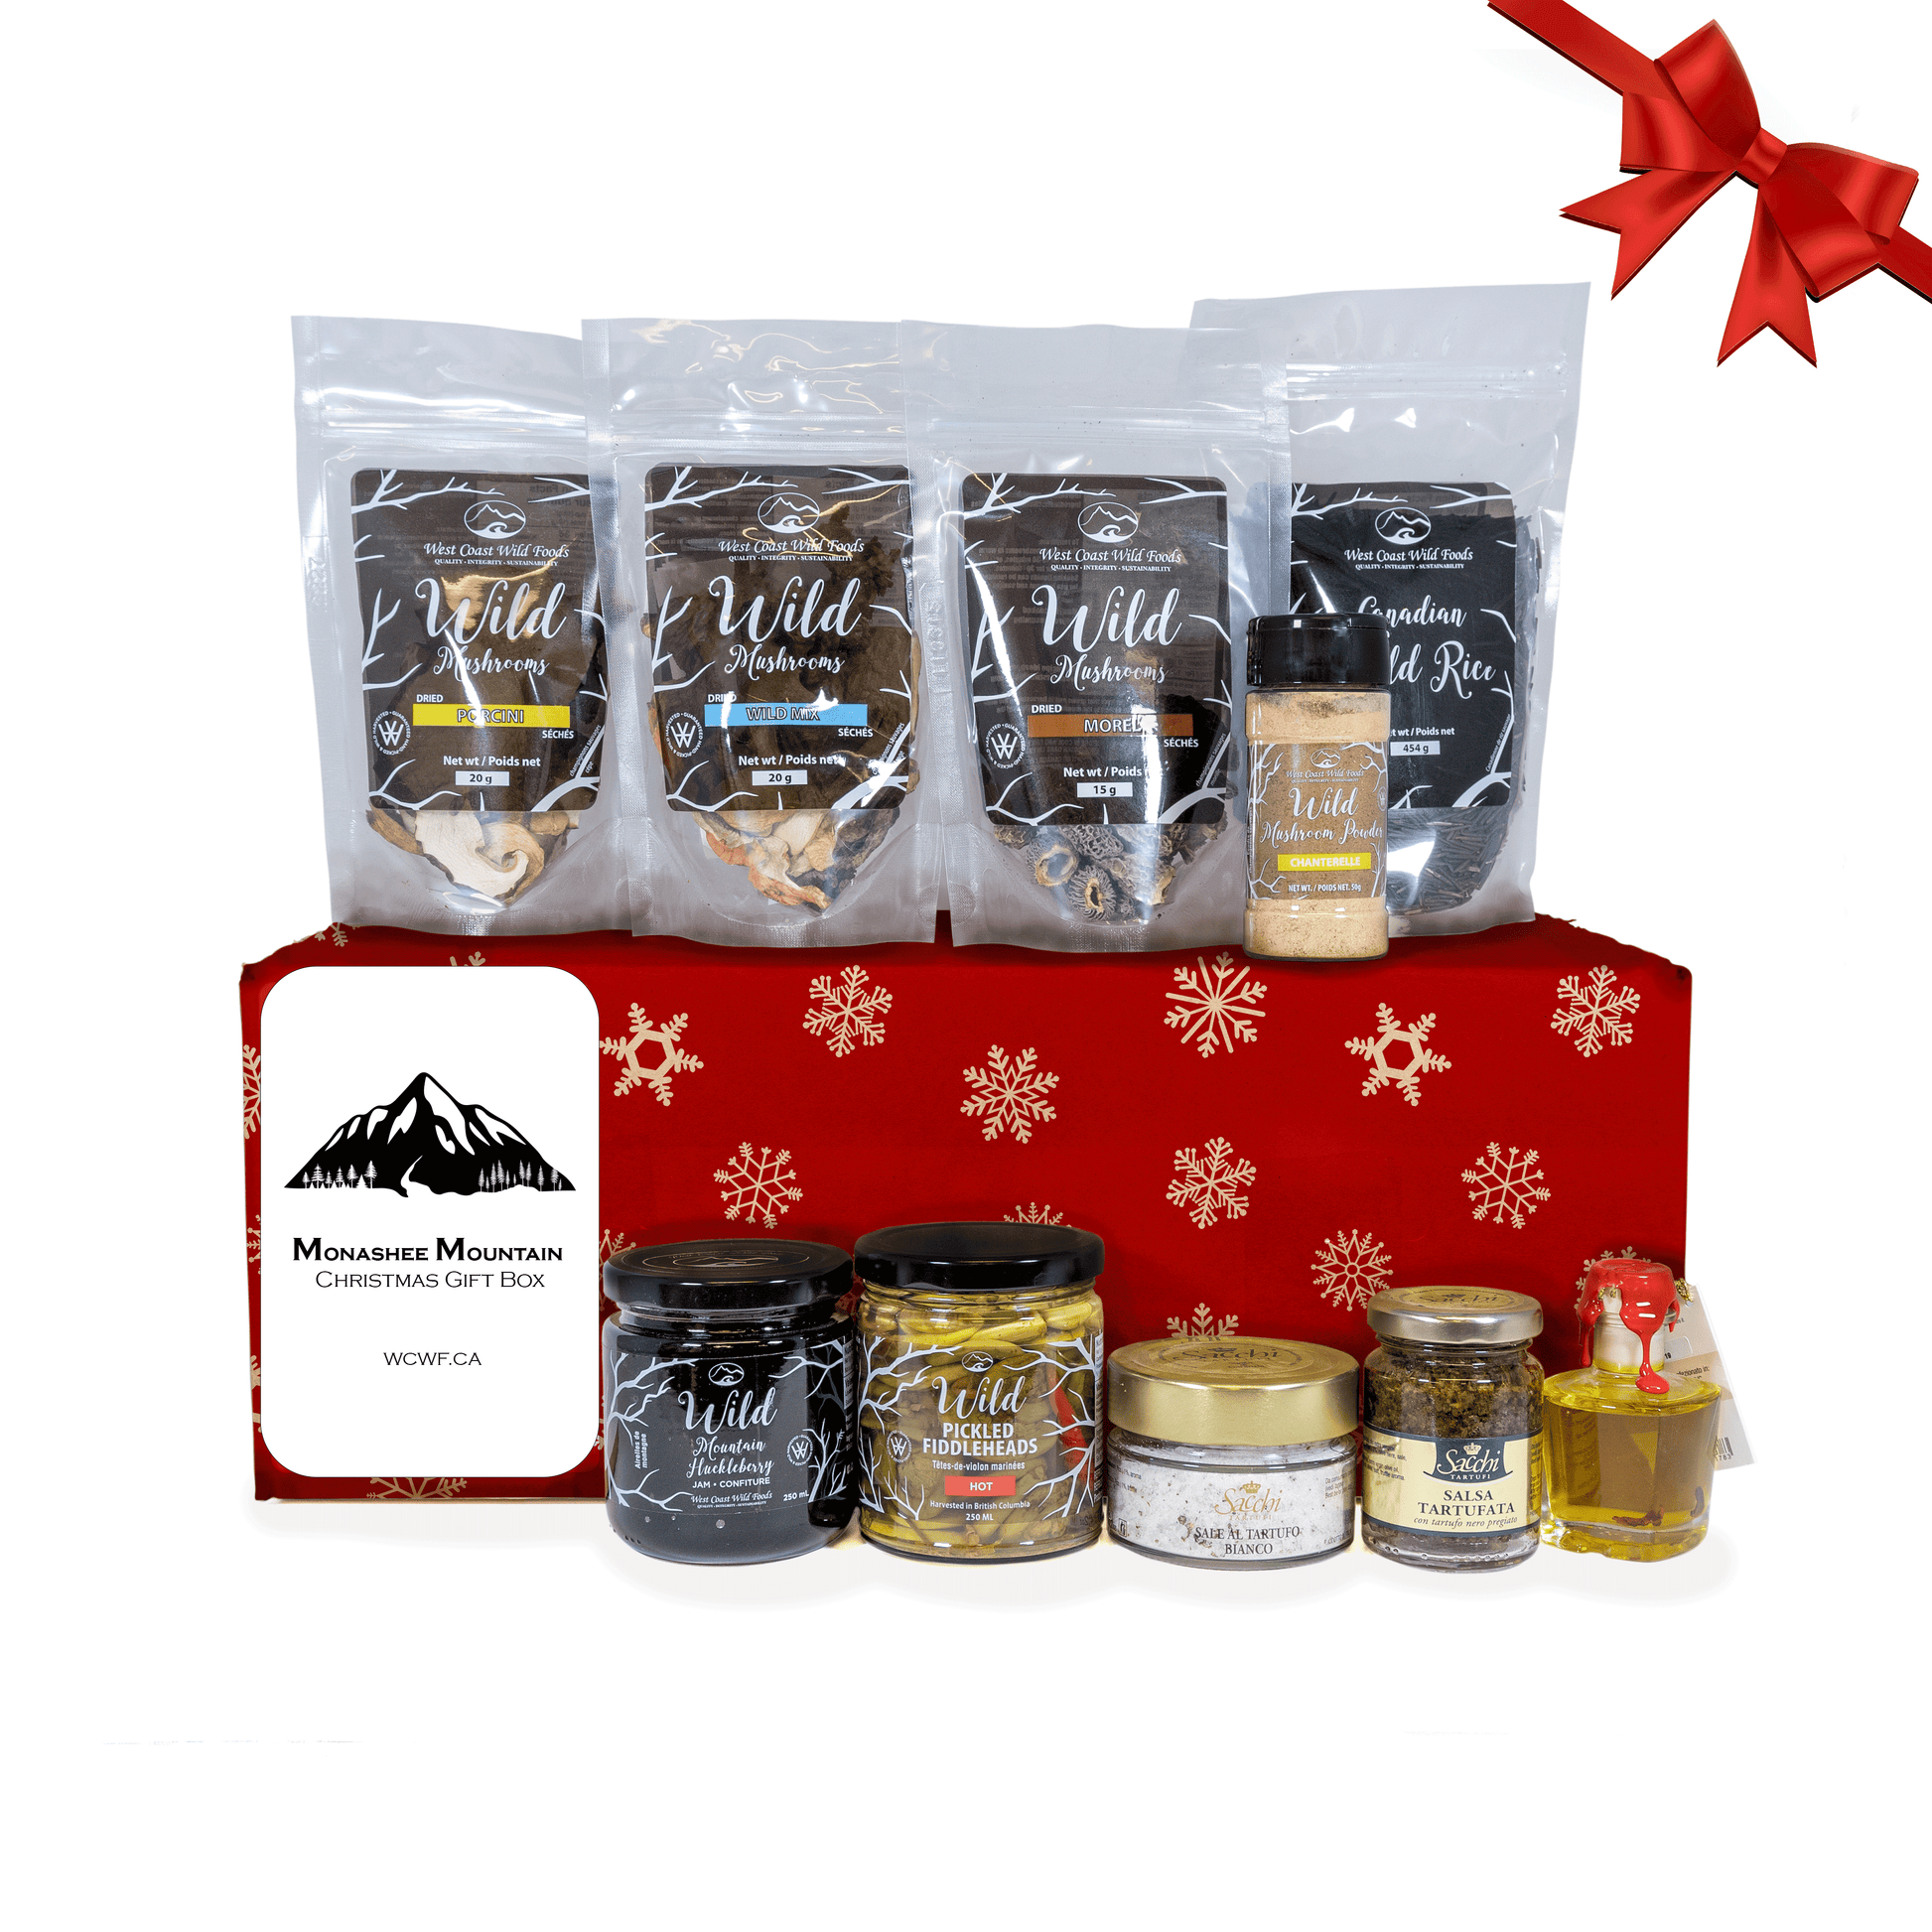 Monashee Mountain Christmas Gift Box